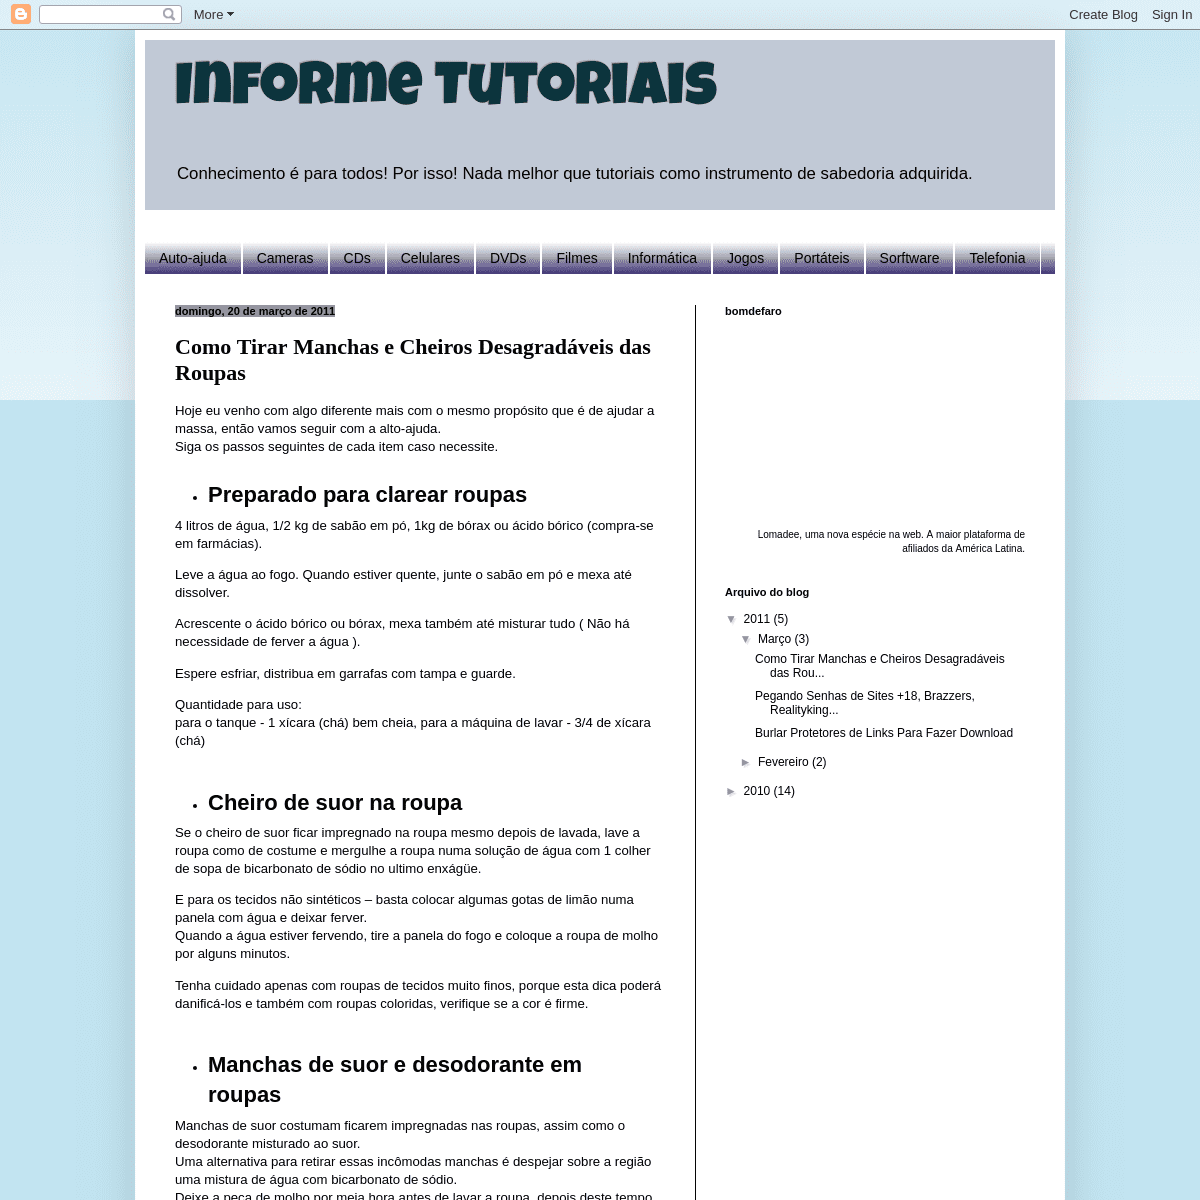 A complete backup of informetutoriais.blogspot.com